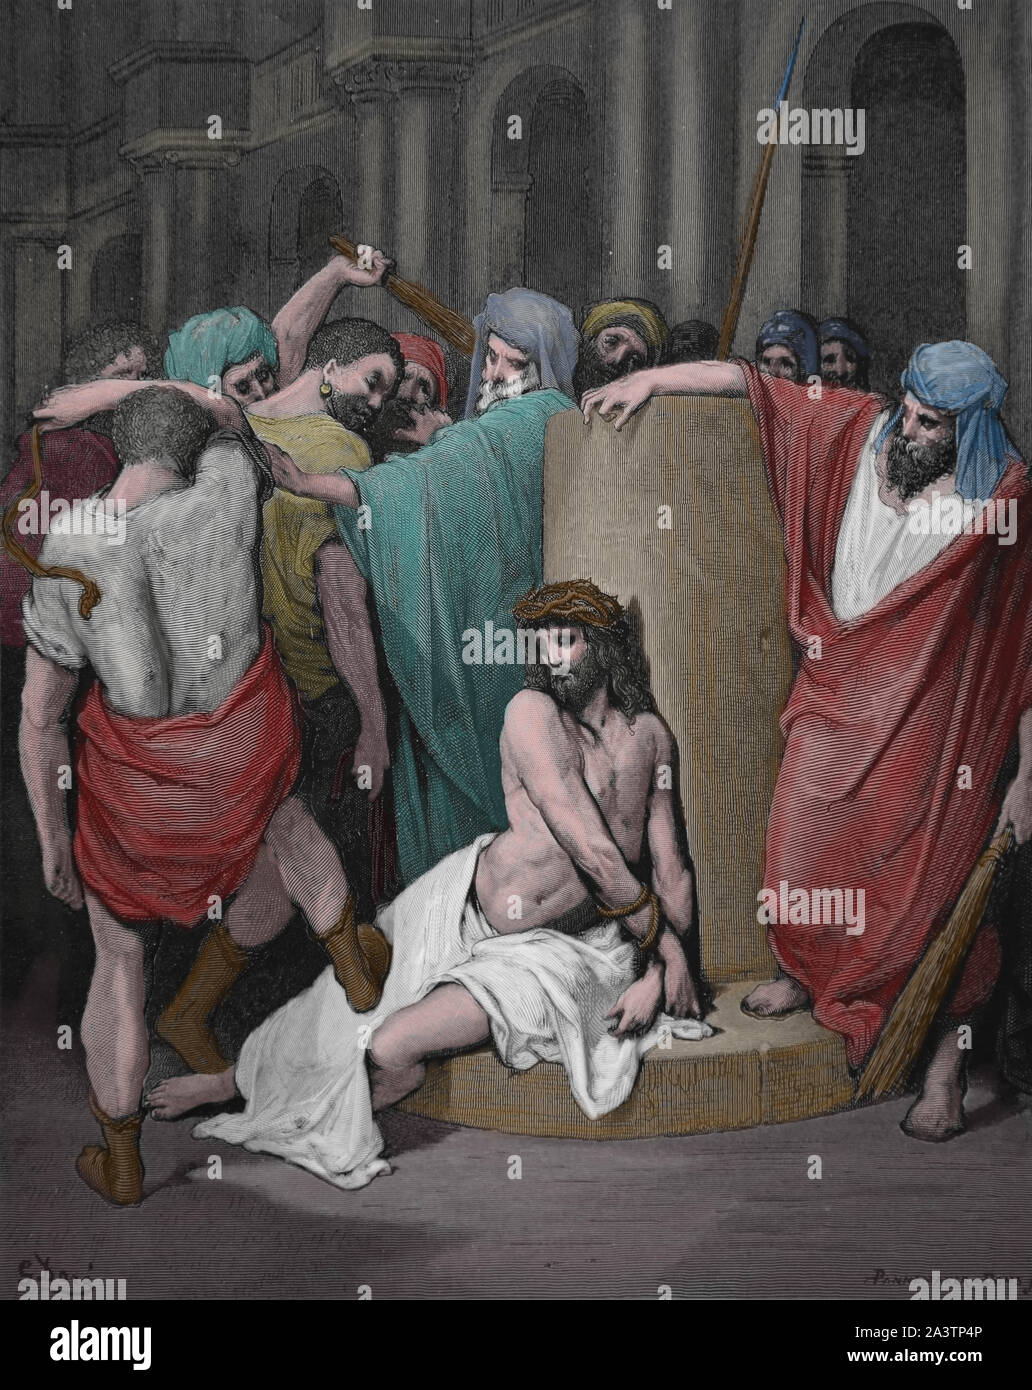 Leidenschaft. Jesus Geißeln. Johannes 19:1. Gravur. Bibel Illustrationen von Gustave Dore. 19. Später Färbung. Stockfoto